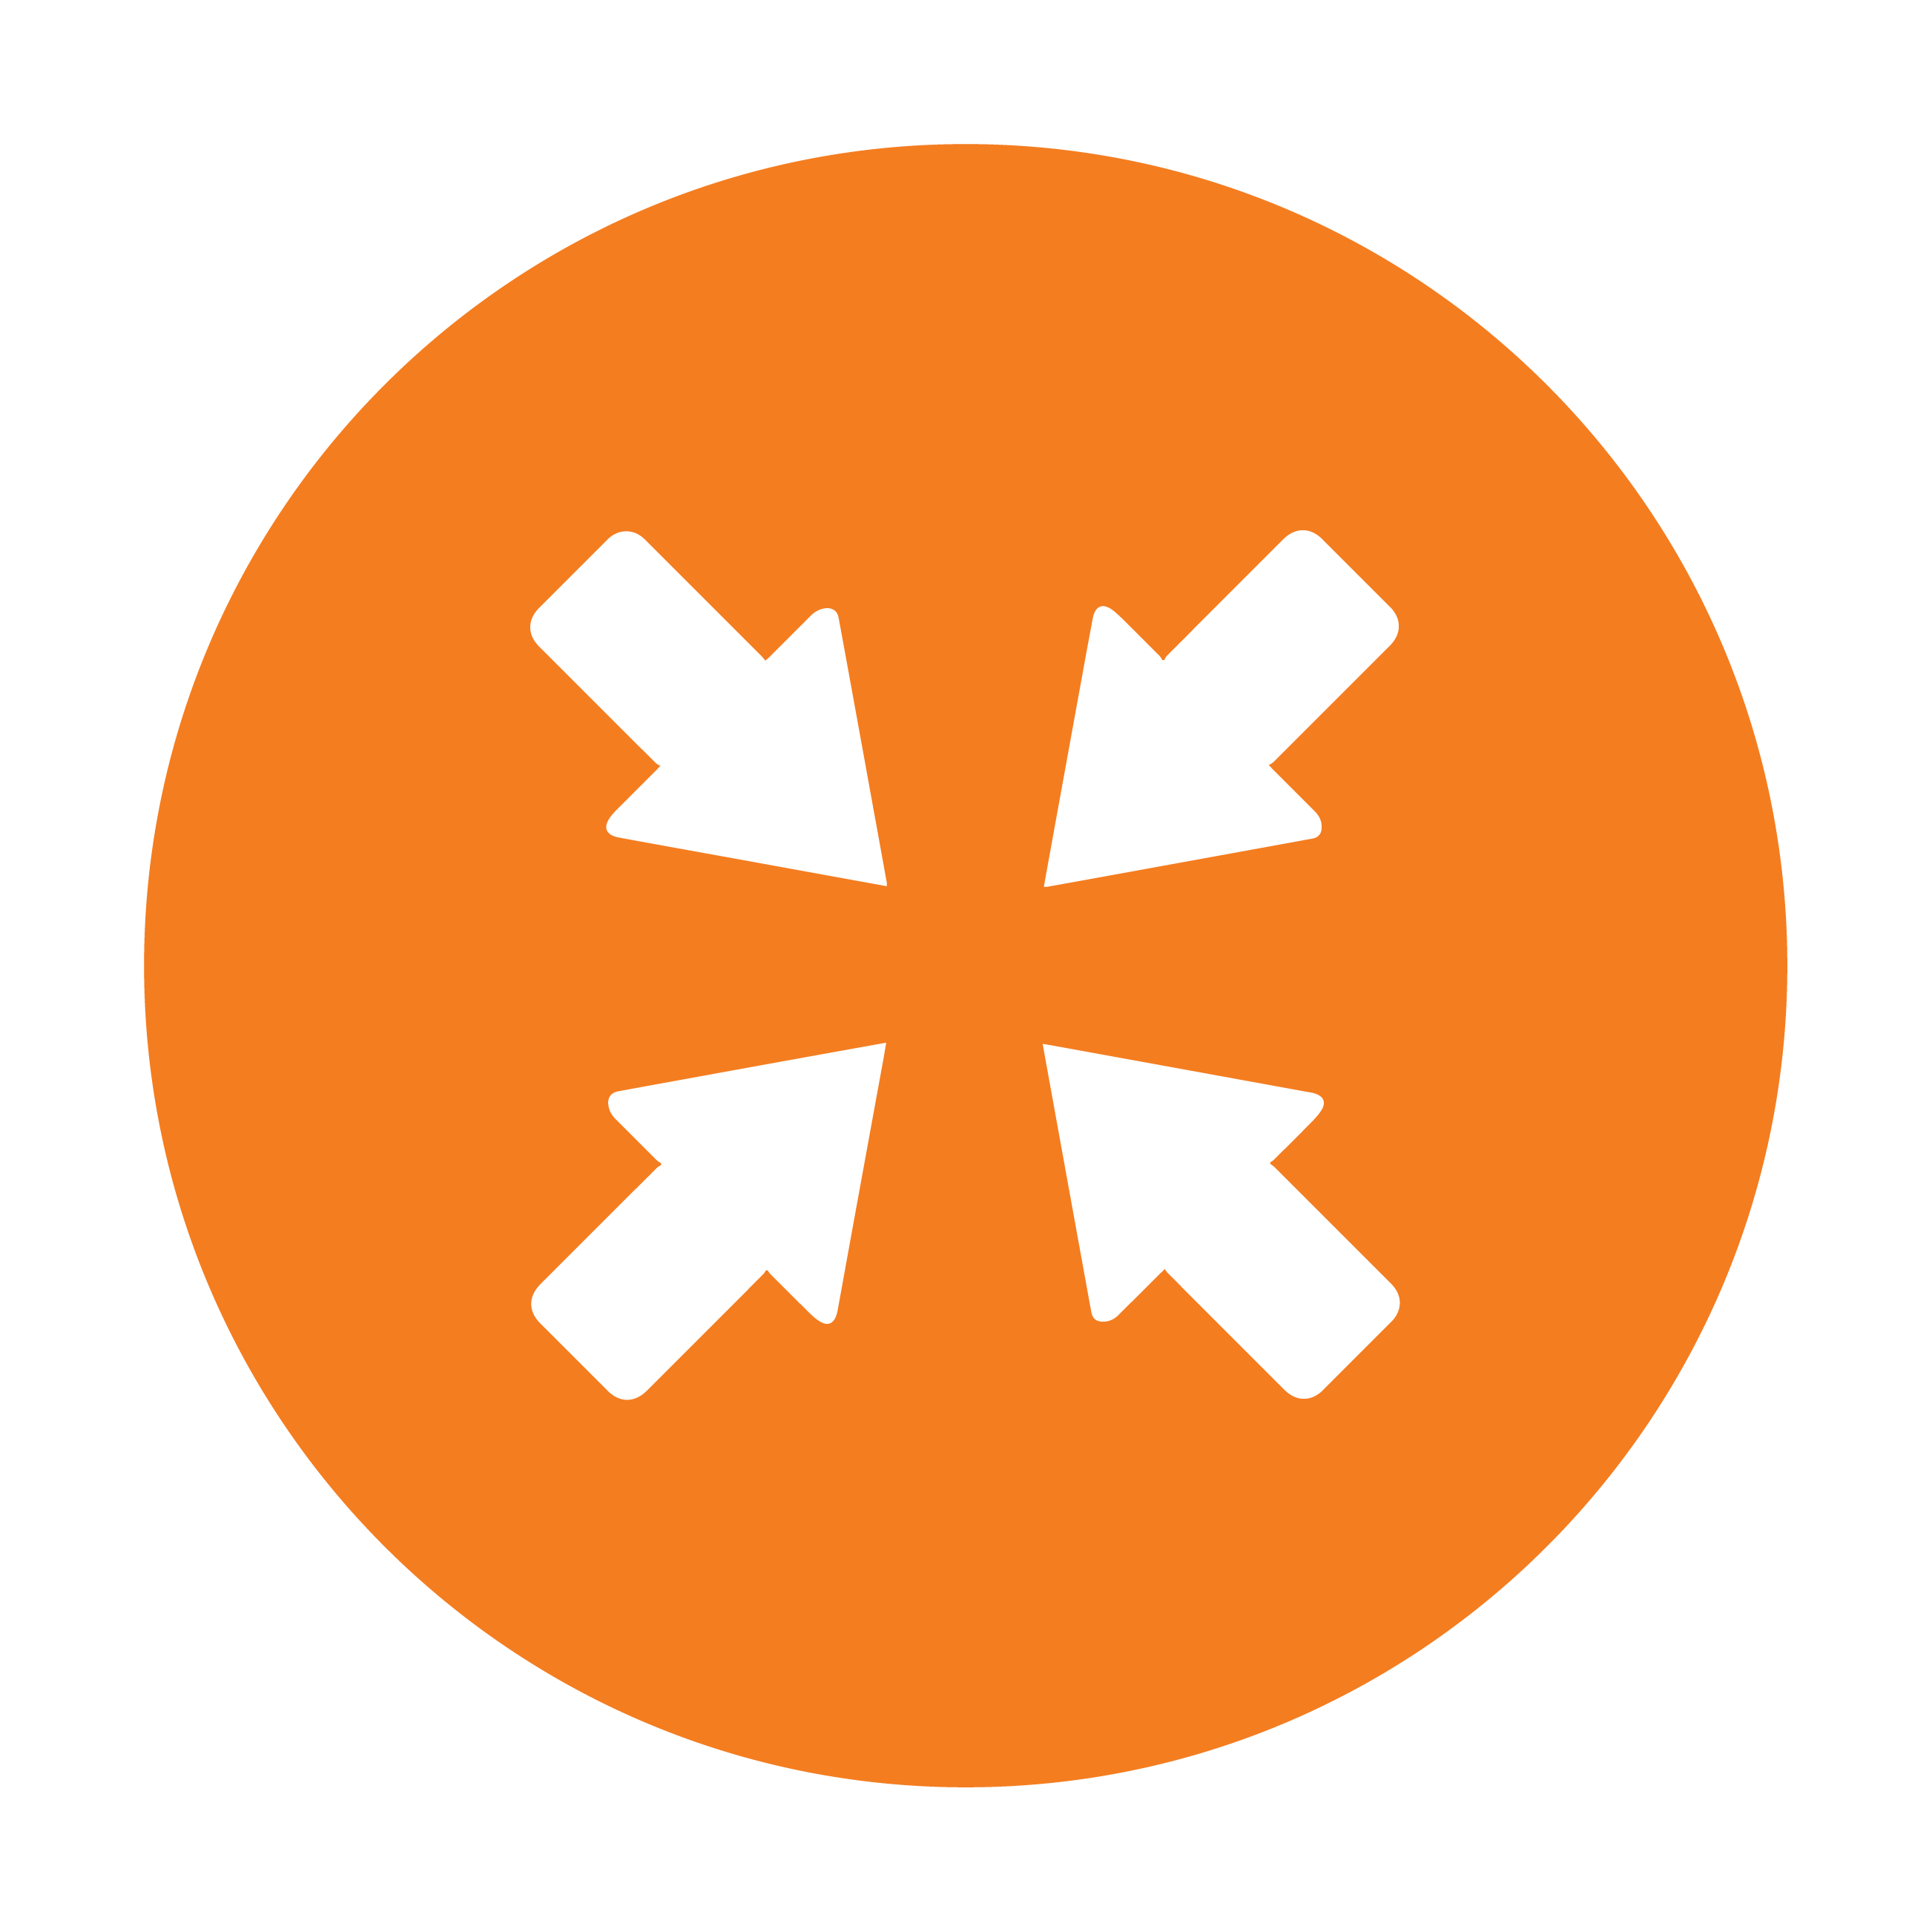 Esbit Icon in Orange zeigt vier Pfeile, die nach innen zeigen.